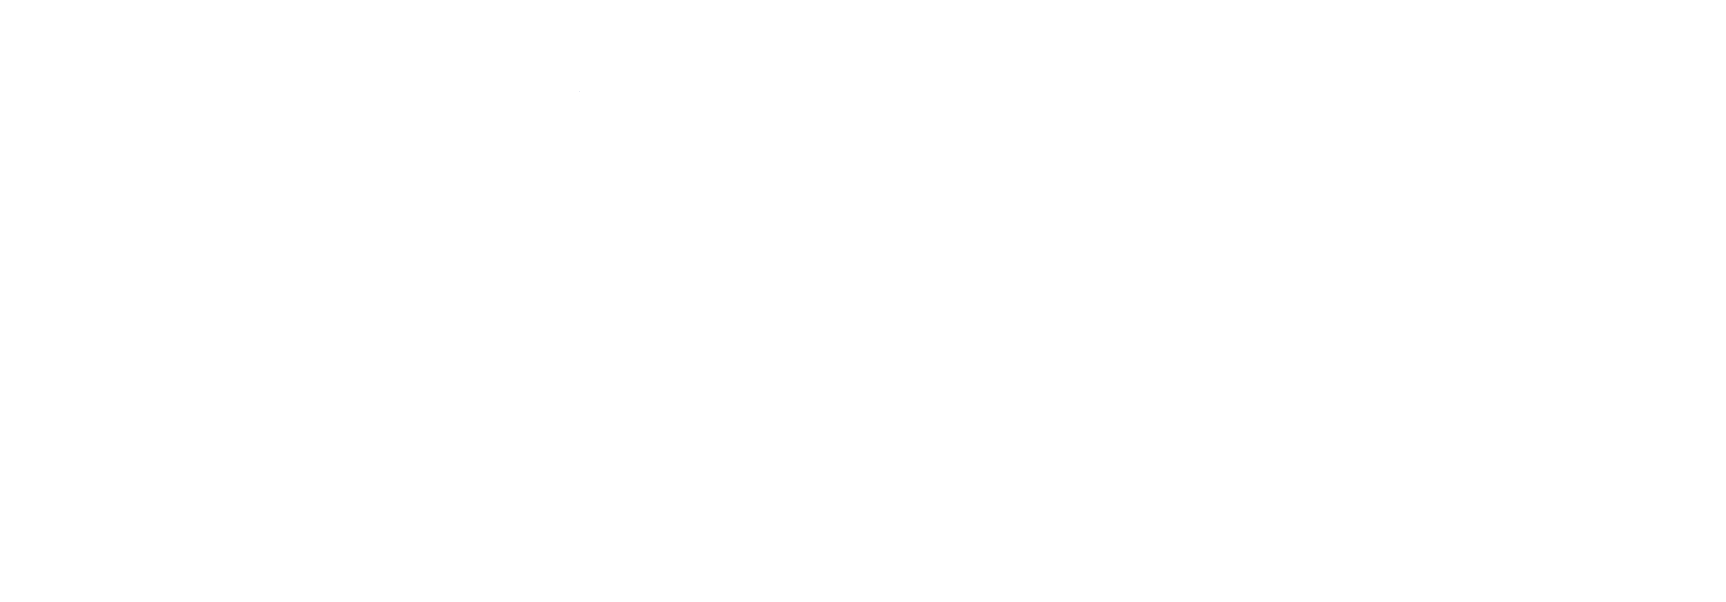 The Southport School |  School website design | School website designers | JWAM Digital